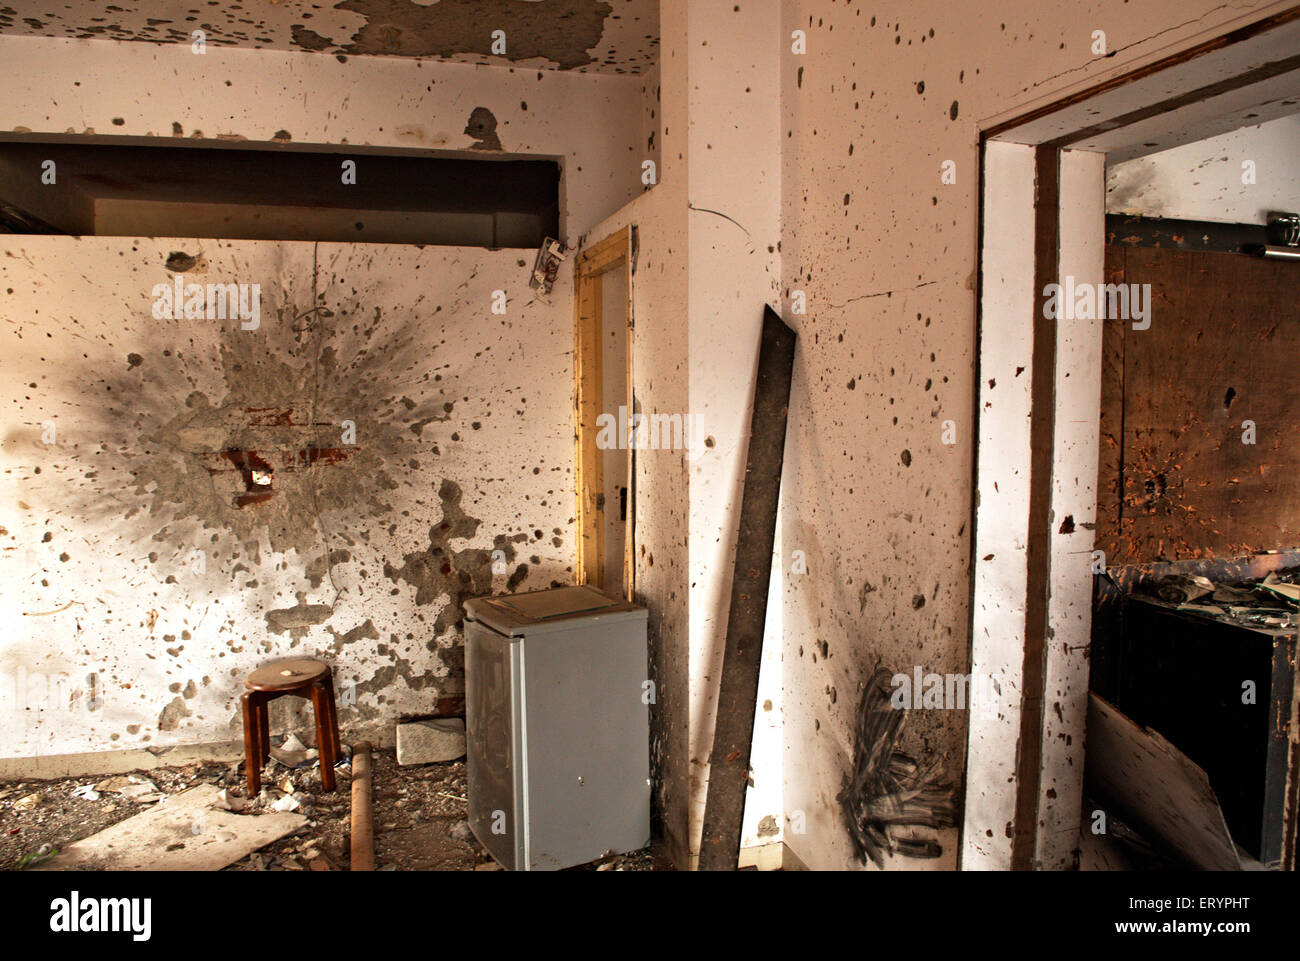 Grenade et balles à nariman house centre communautaire juif par deccan mujahedeen attaque terroristes à Bombay Banque D'Images